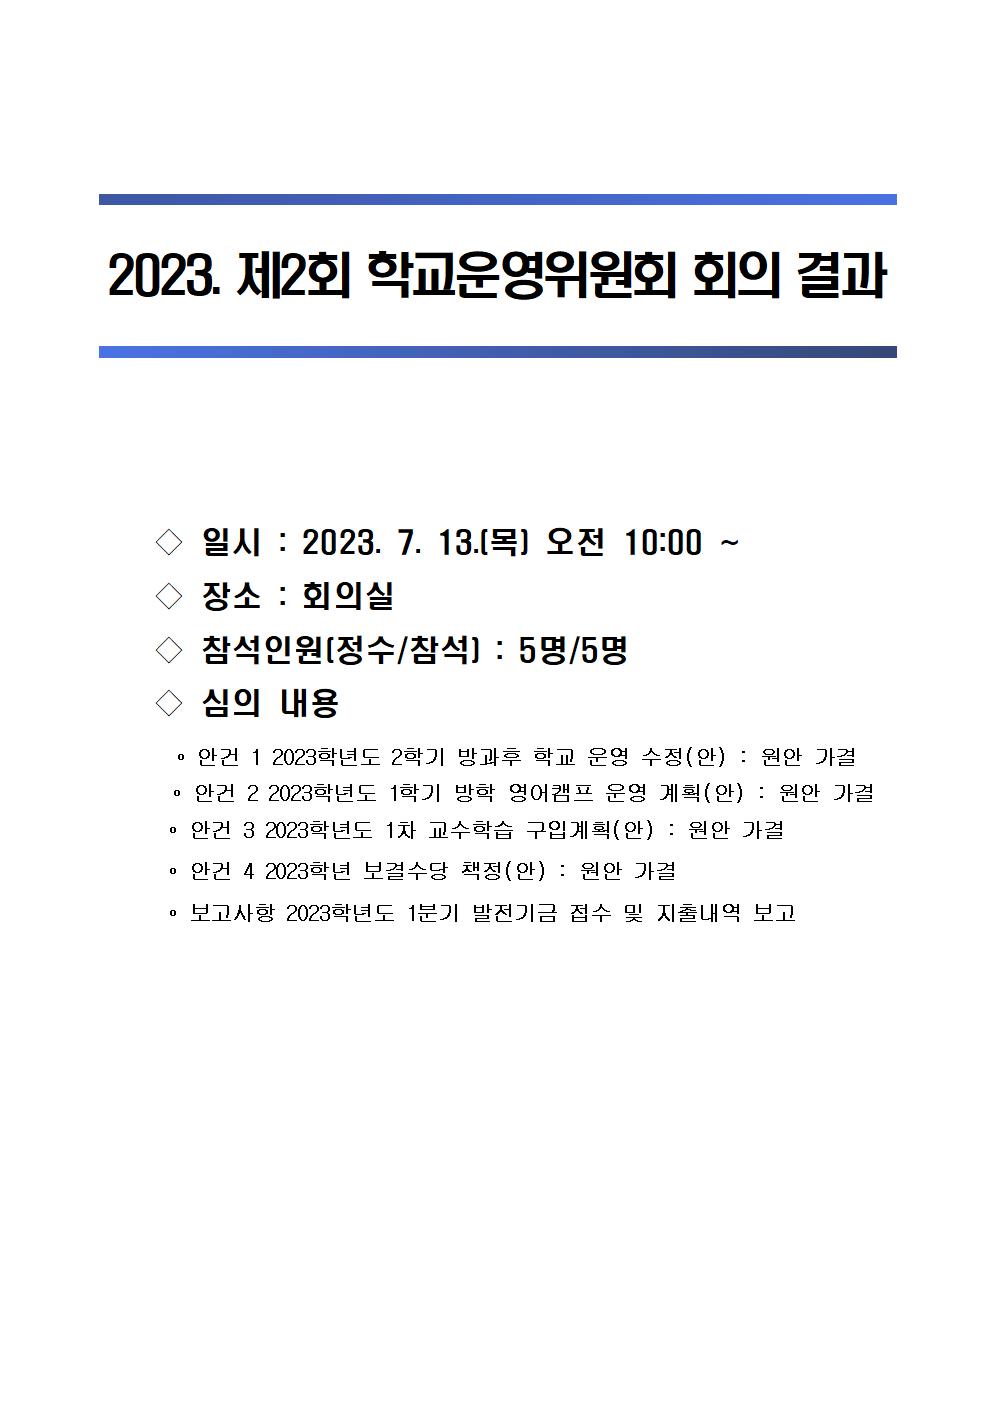 2023. 제2회 학교운영위원회 회의결과.jpg